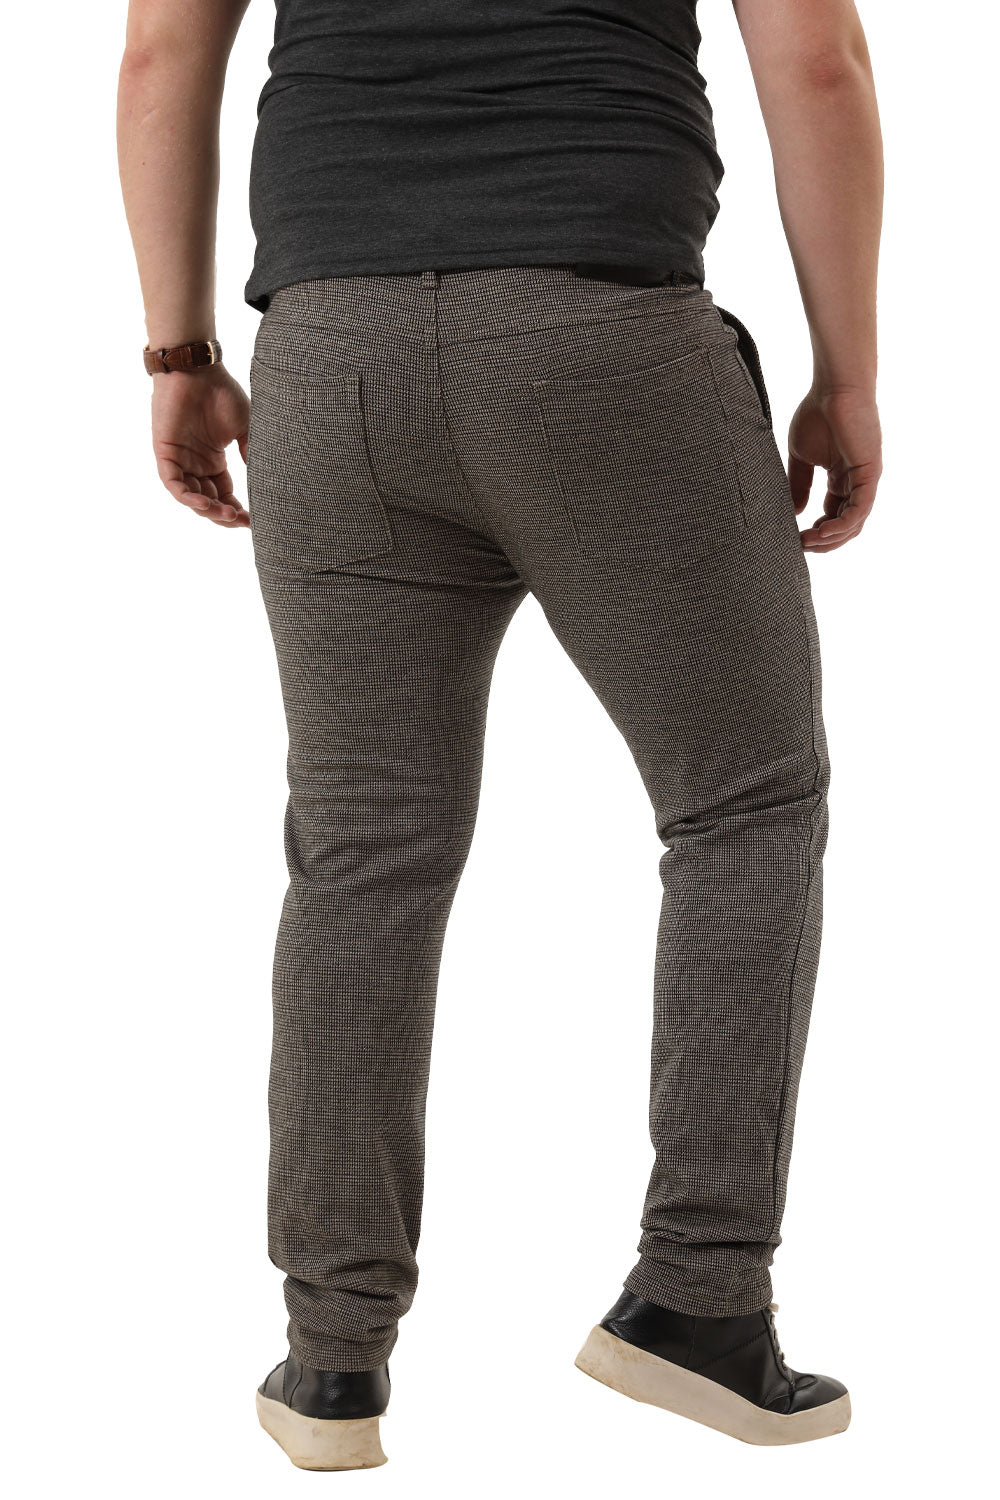 Men's spandex striped pants in gray(B&T)